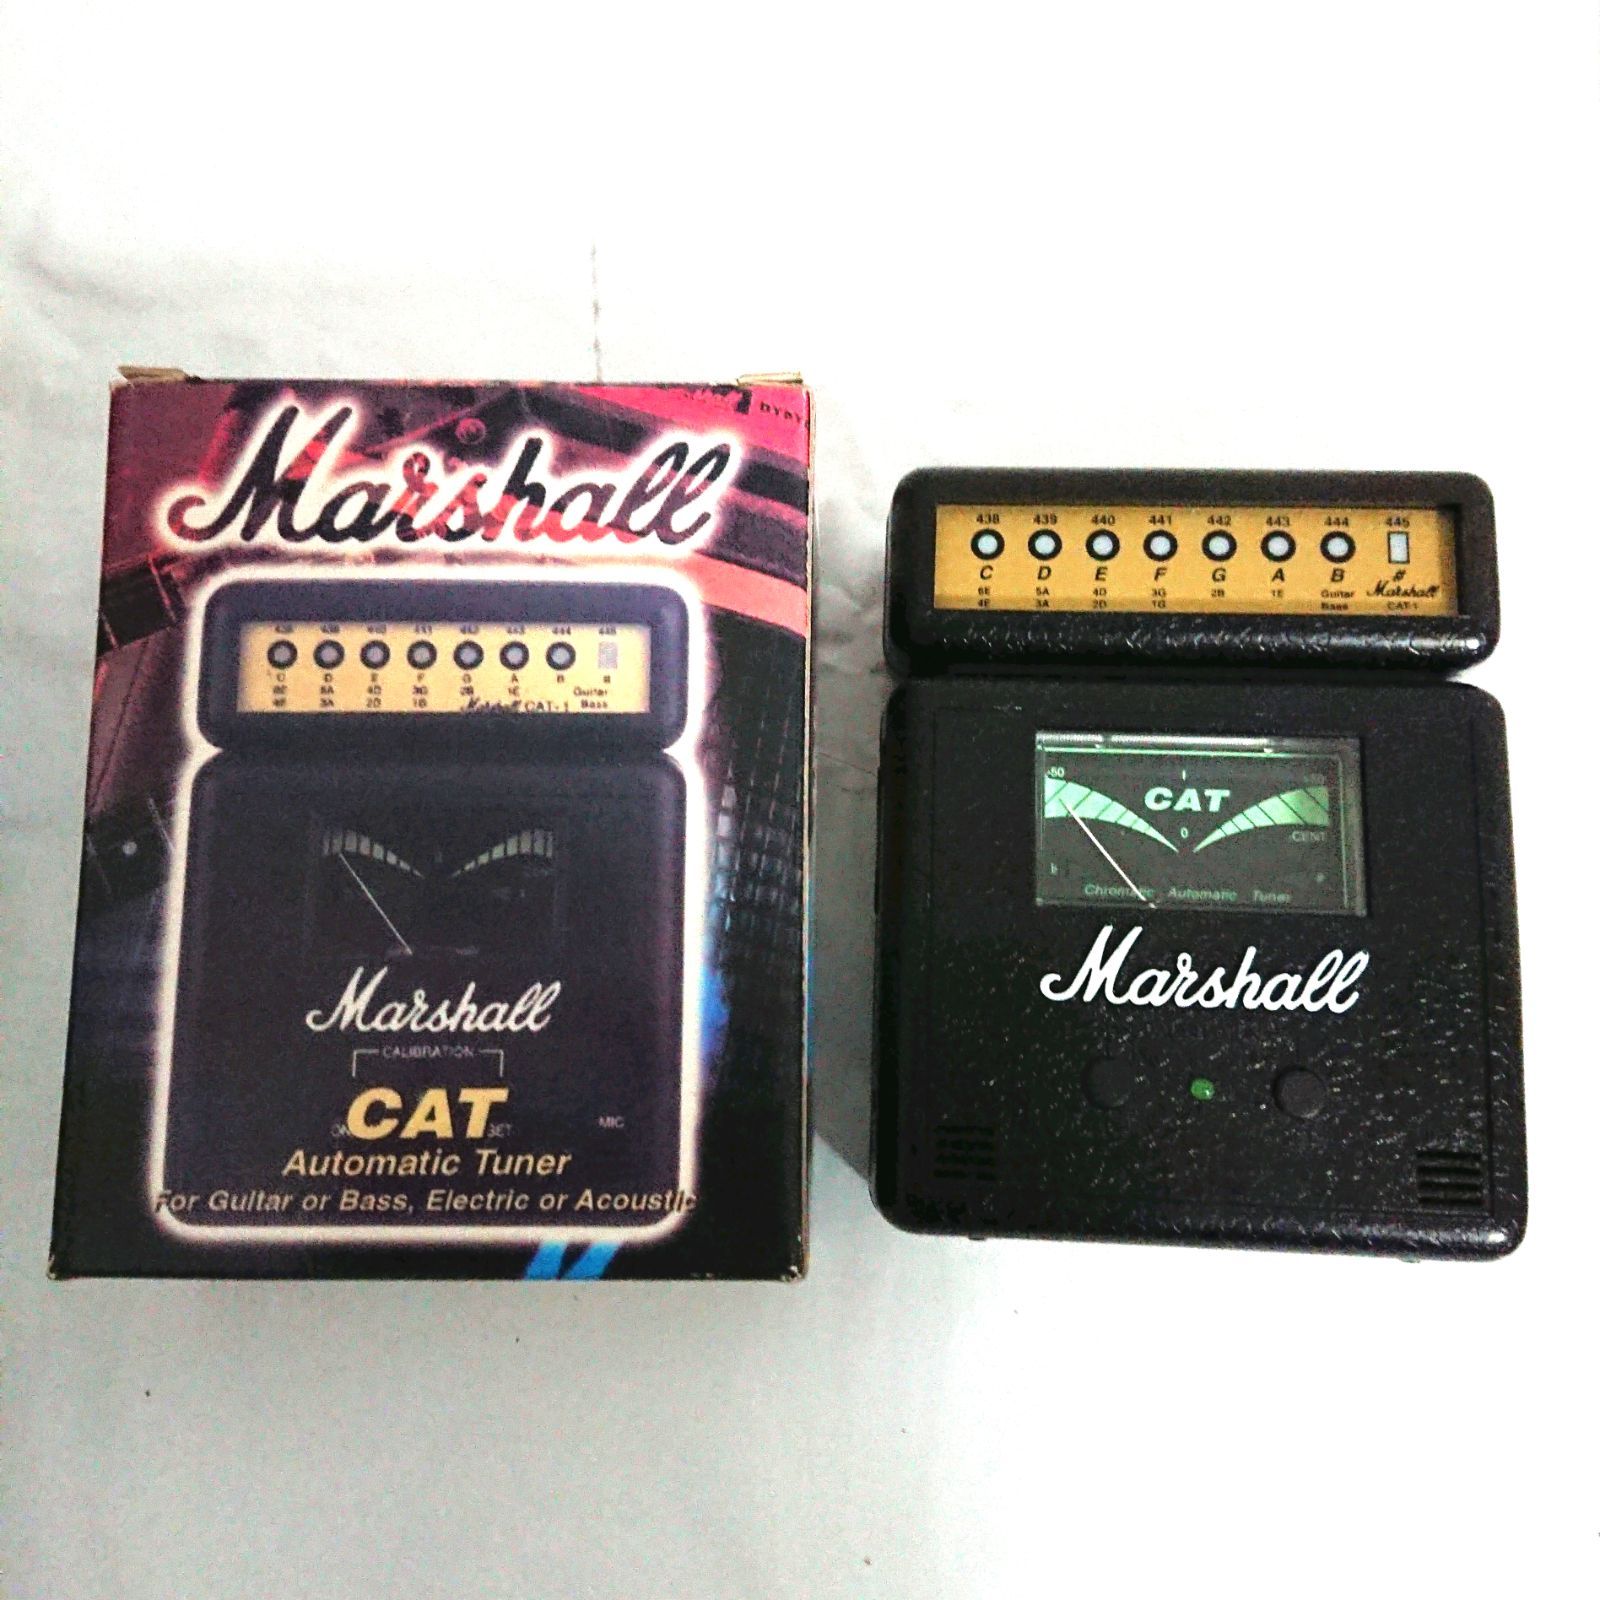 Marshall マーシャル C.A.T. アンプ型 ギターチューナー エレキギター アコースティックギター ベースも使用O可能 置き型  ミニチューナー 9V電池